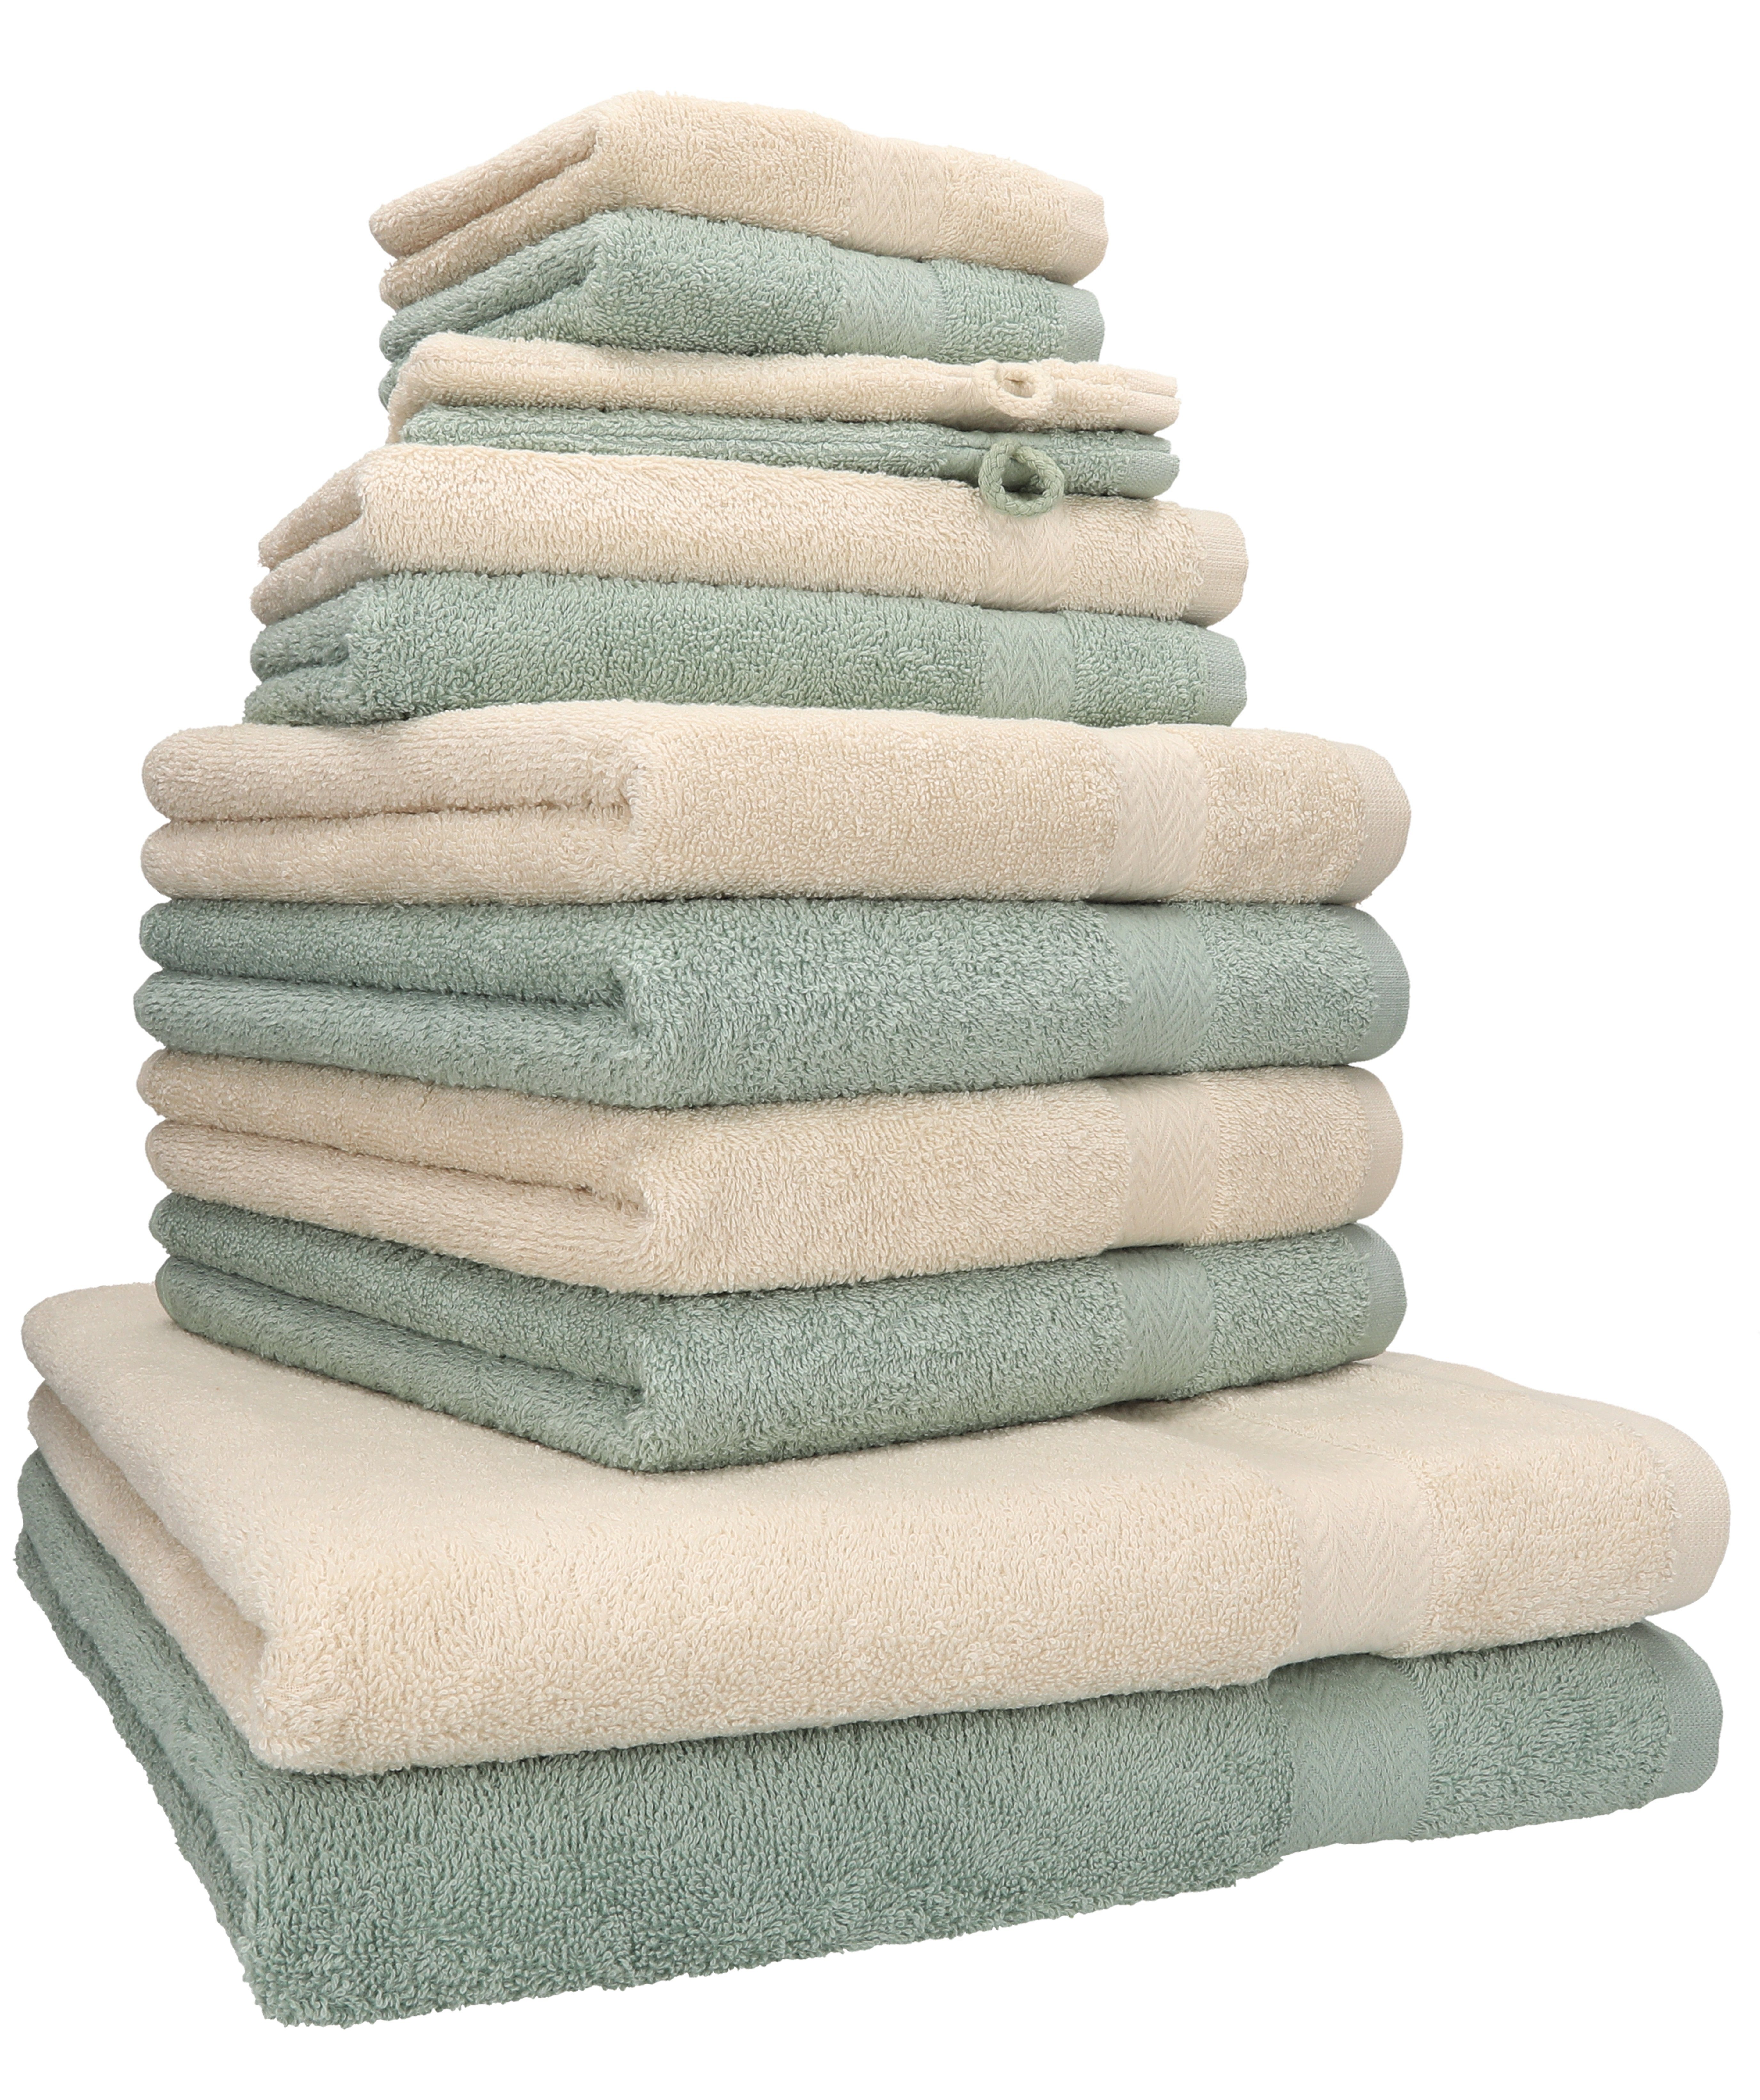 Betz Handtuch Set 12-tlg. Handtuch Set Premium Farbe Sand/heugrün, 100% Baumwolle, (12-tlg) | Handtuch-Sets